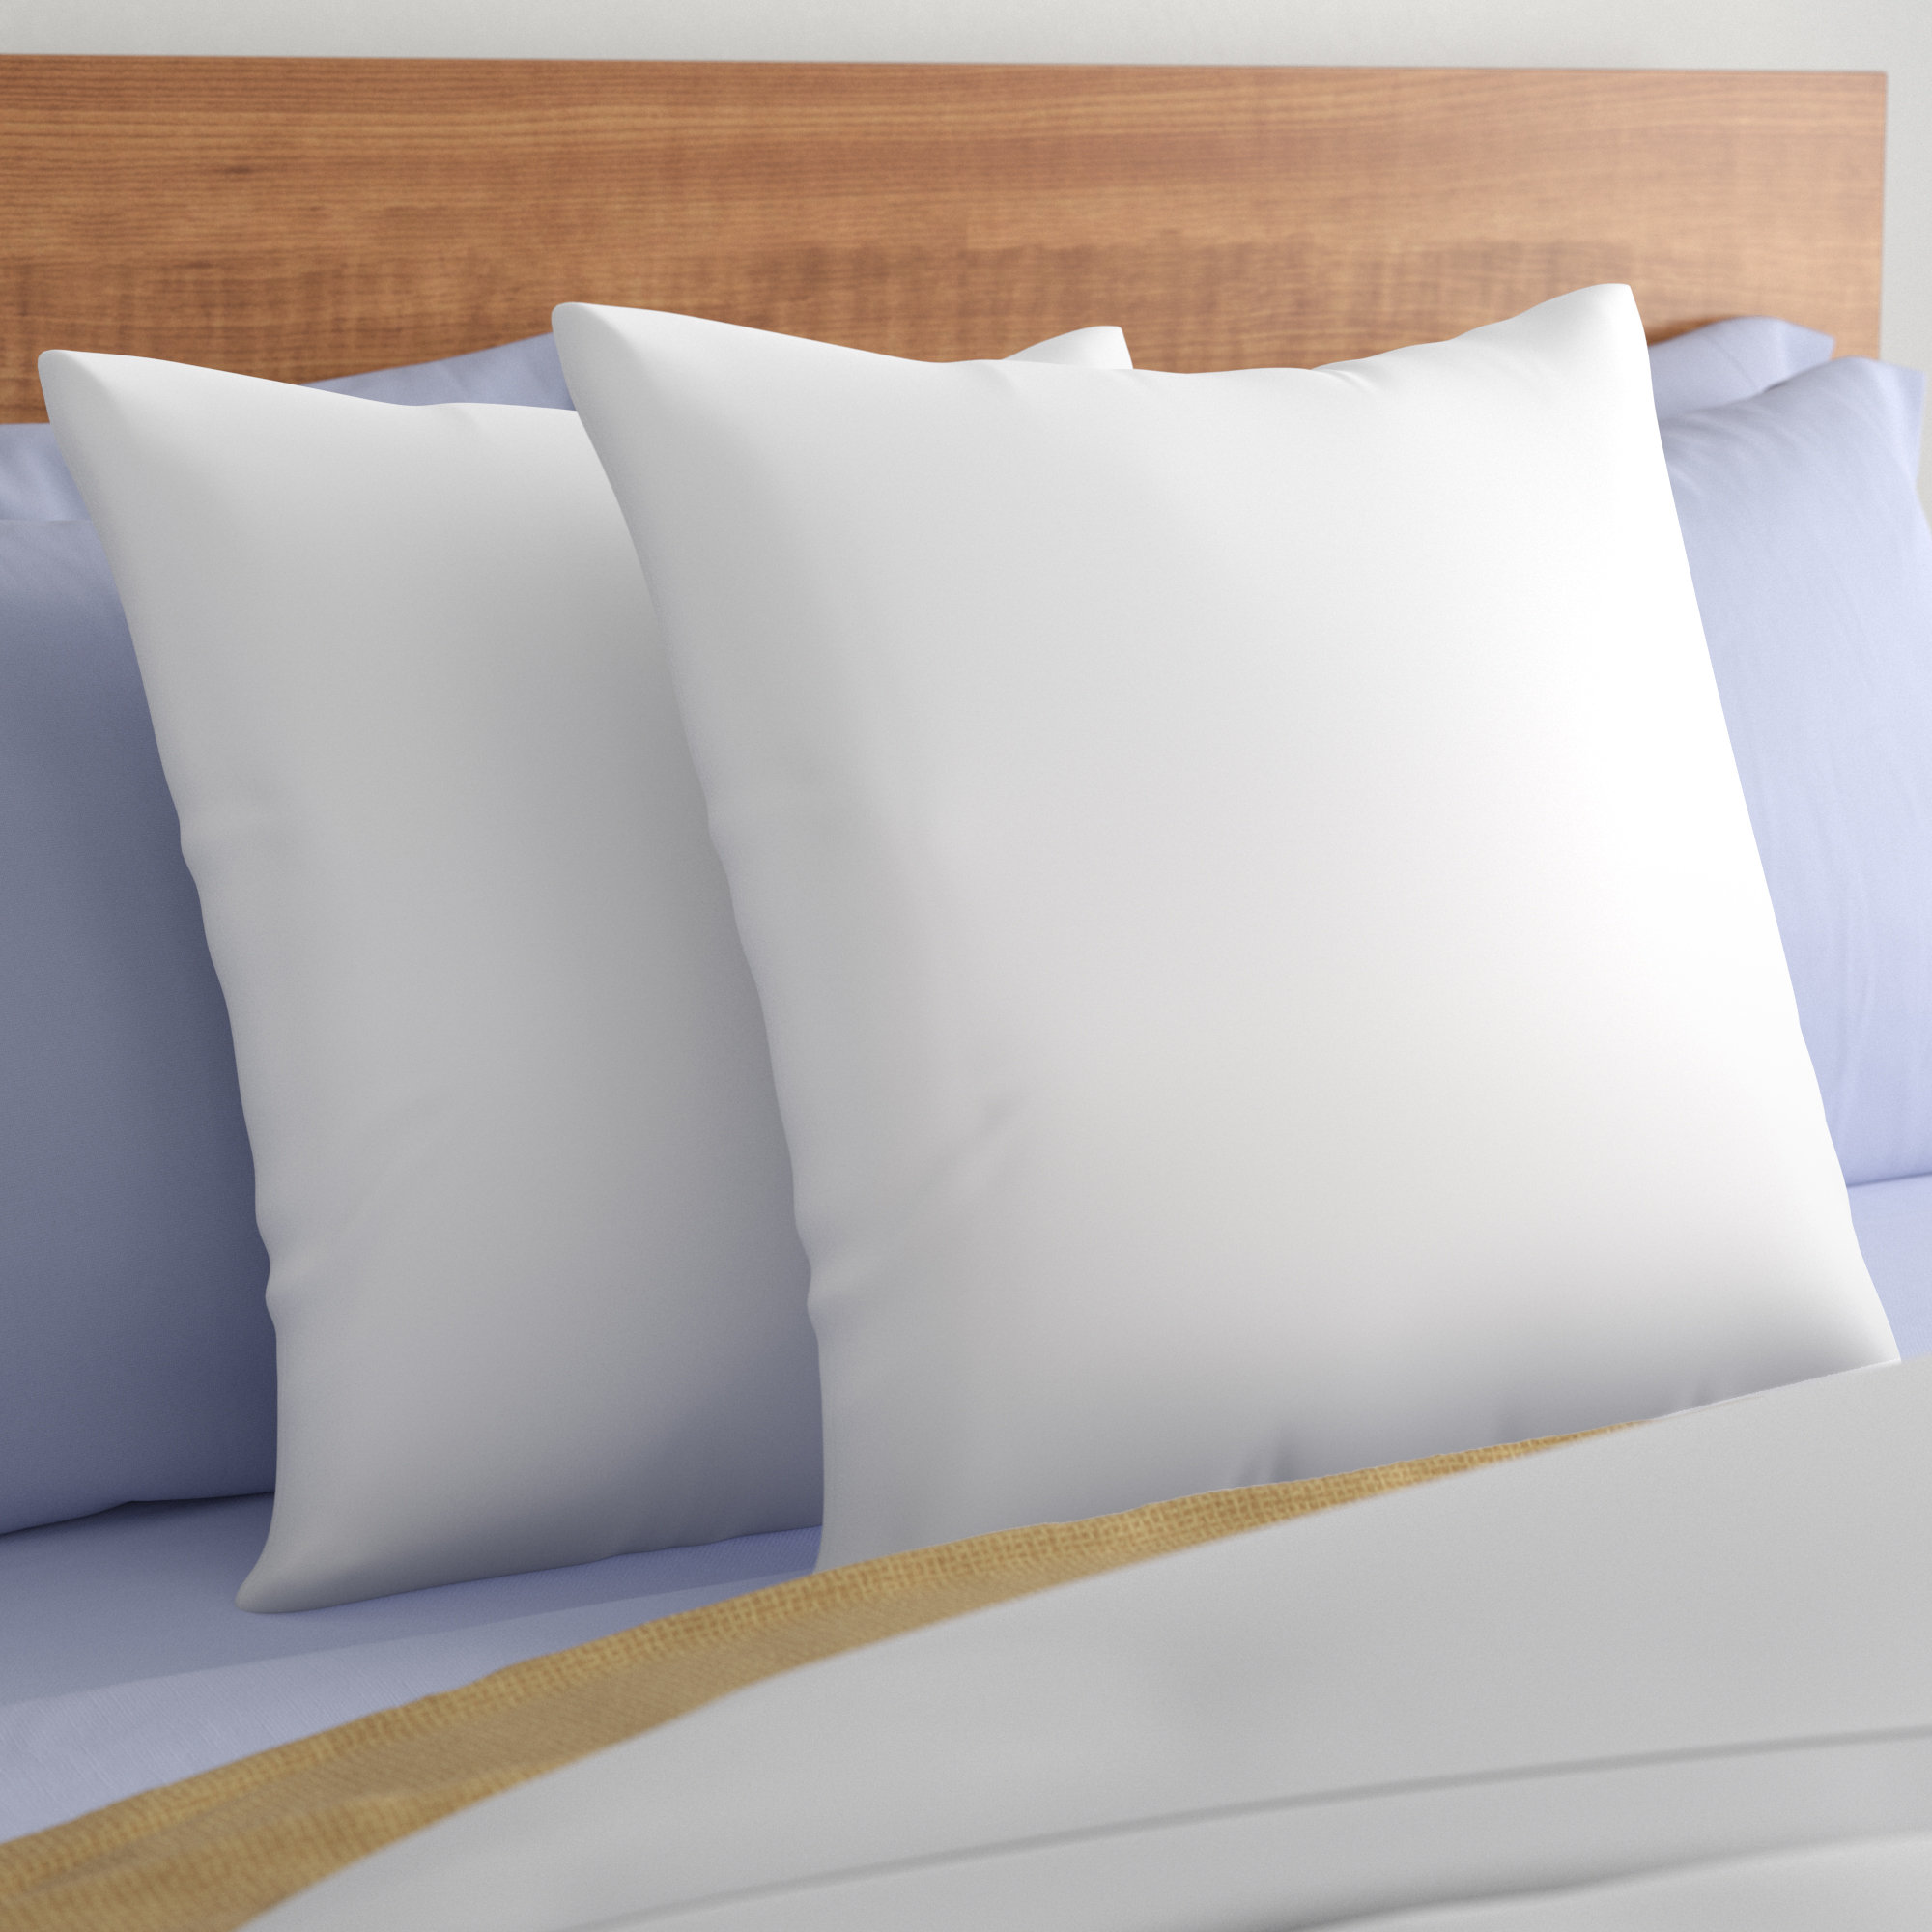 Pillow Insert 20x20 Inches Pillow Form Filled Cushion Sham Filler  Decorative Pillows Fiberfill Pillow Stuffing Bed Pillows 